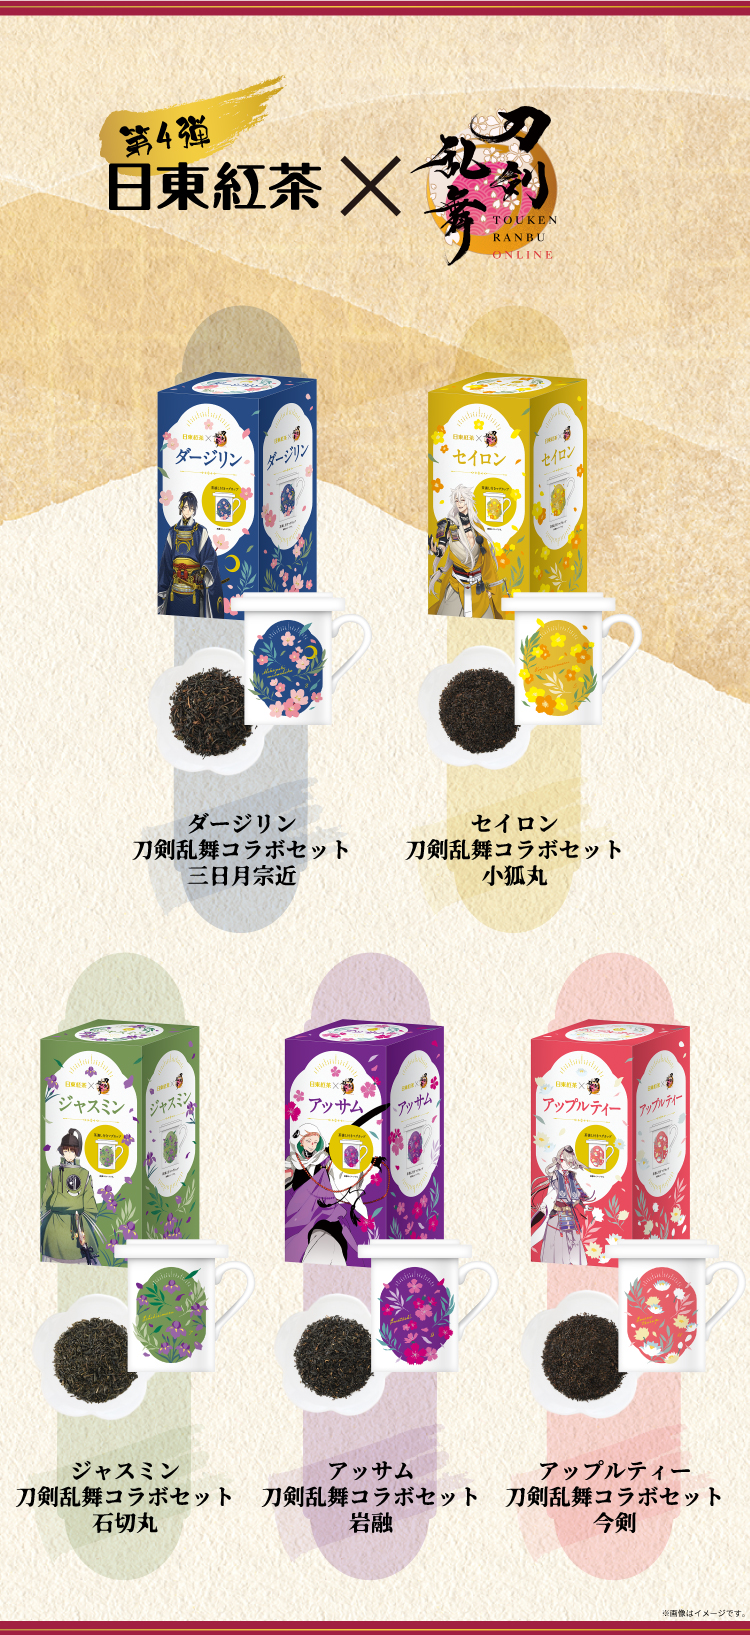 オリジナル豆皿 刀剣乱舞コラボ 岩融【クーポン・ポイント利用不可】-日東紅茶TeaMart